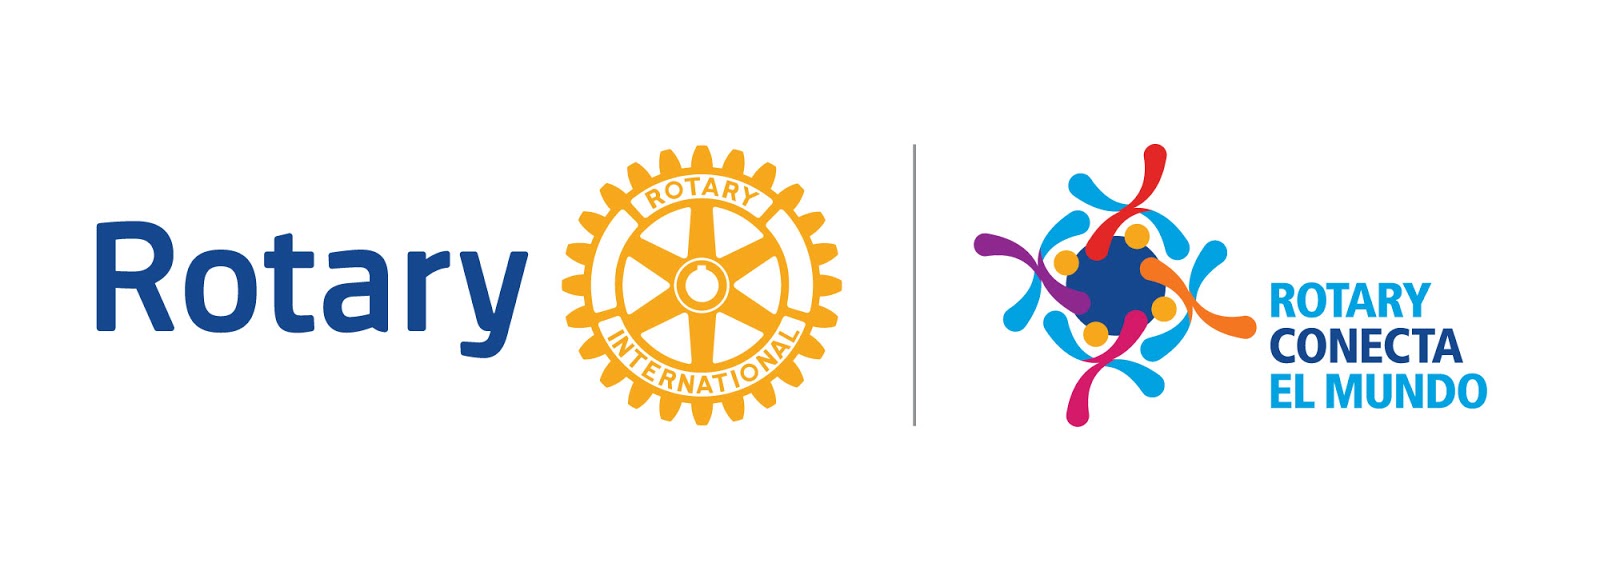 Rotary conecta el mundo